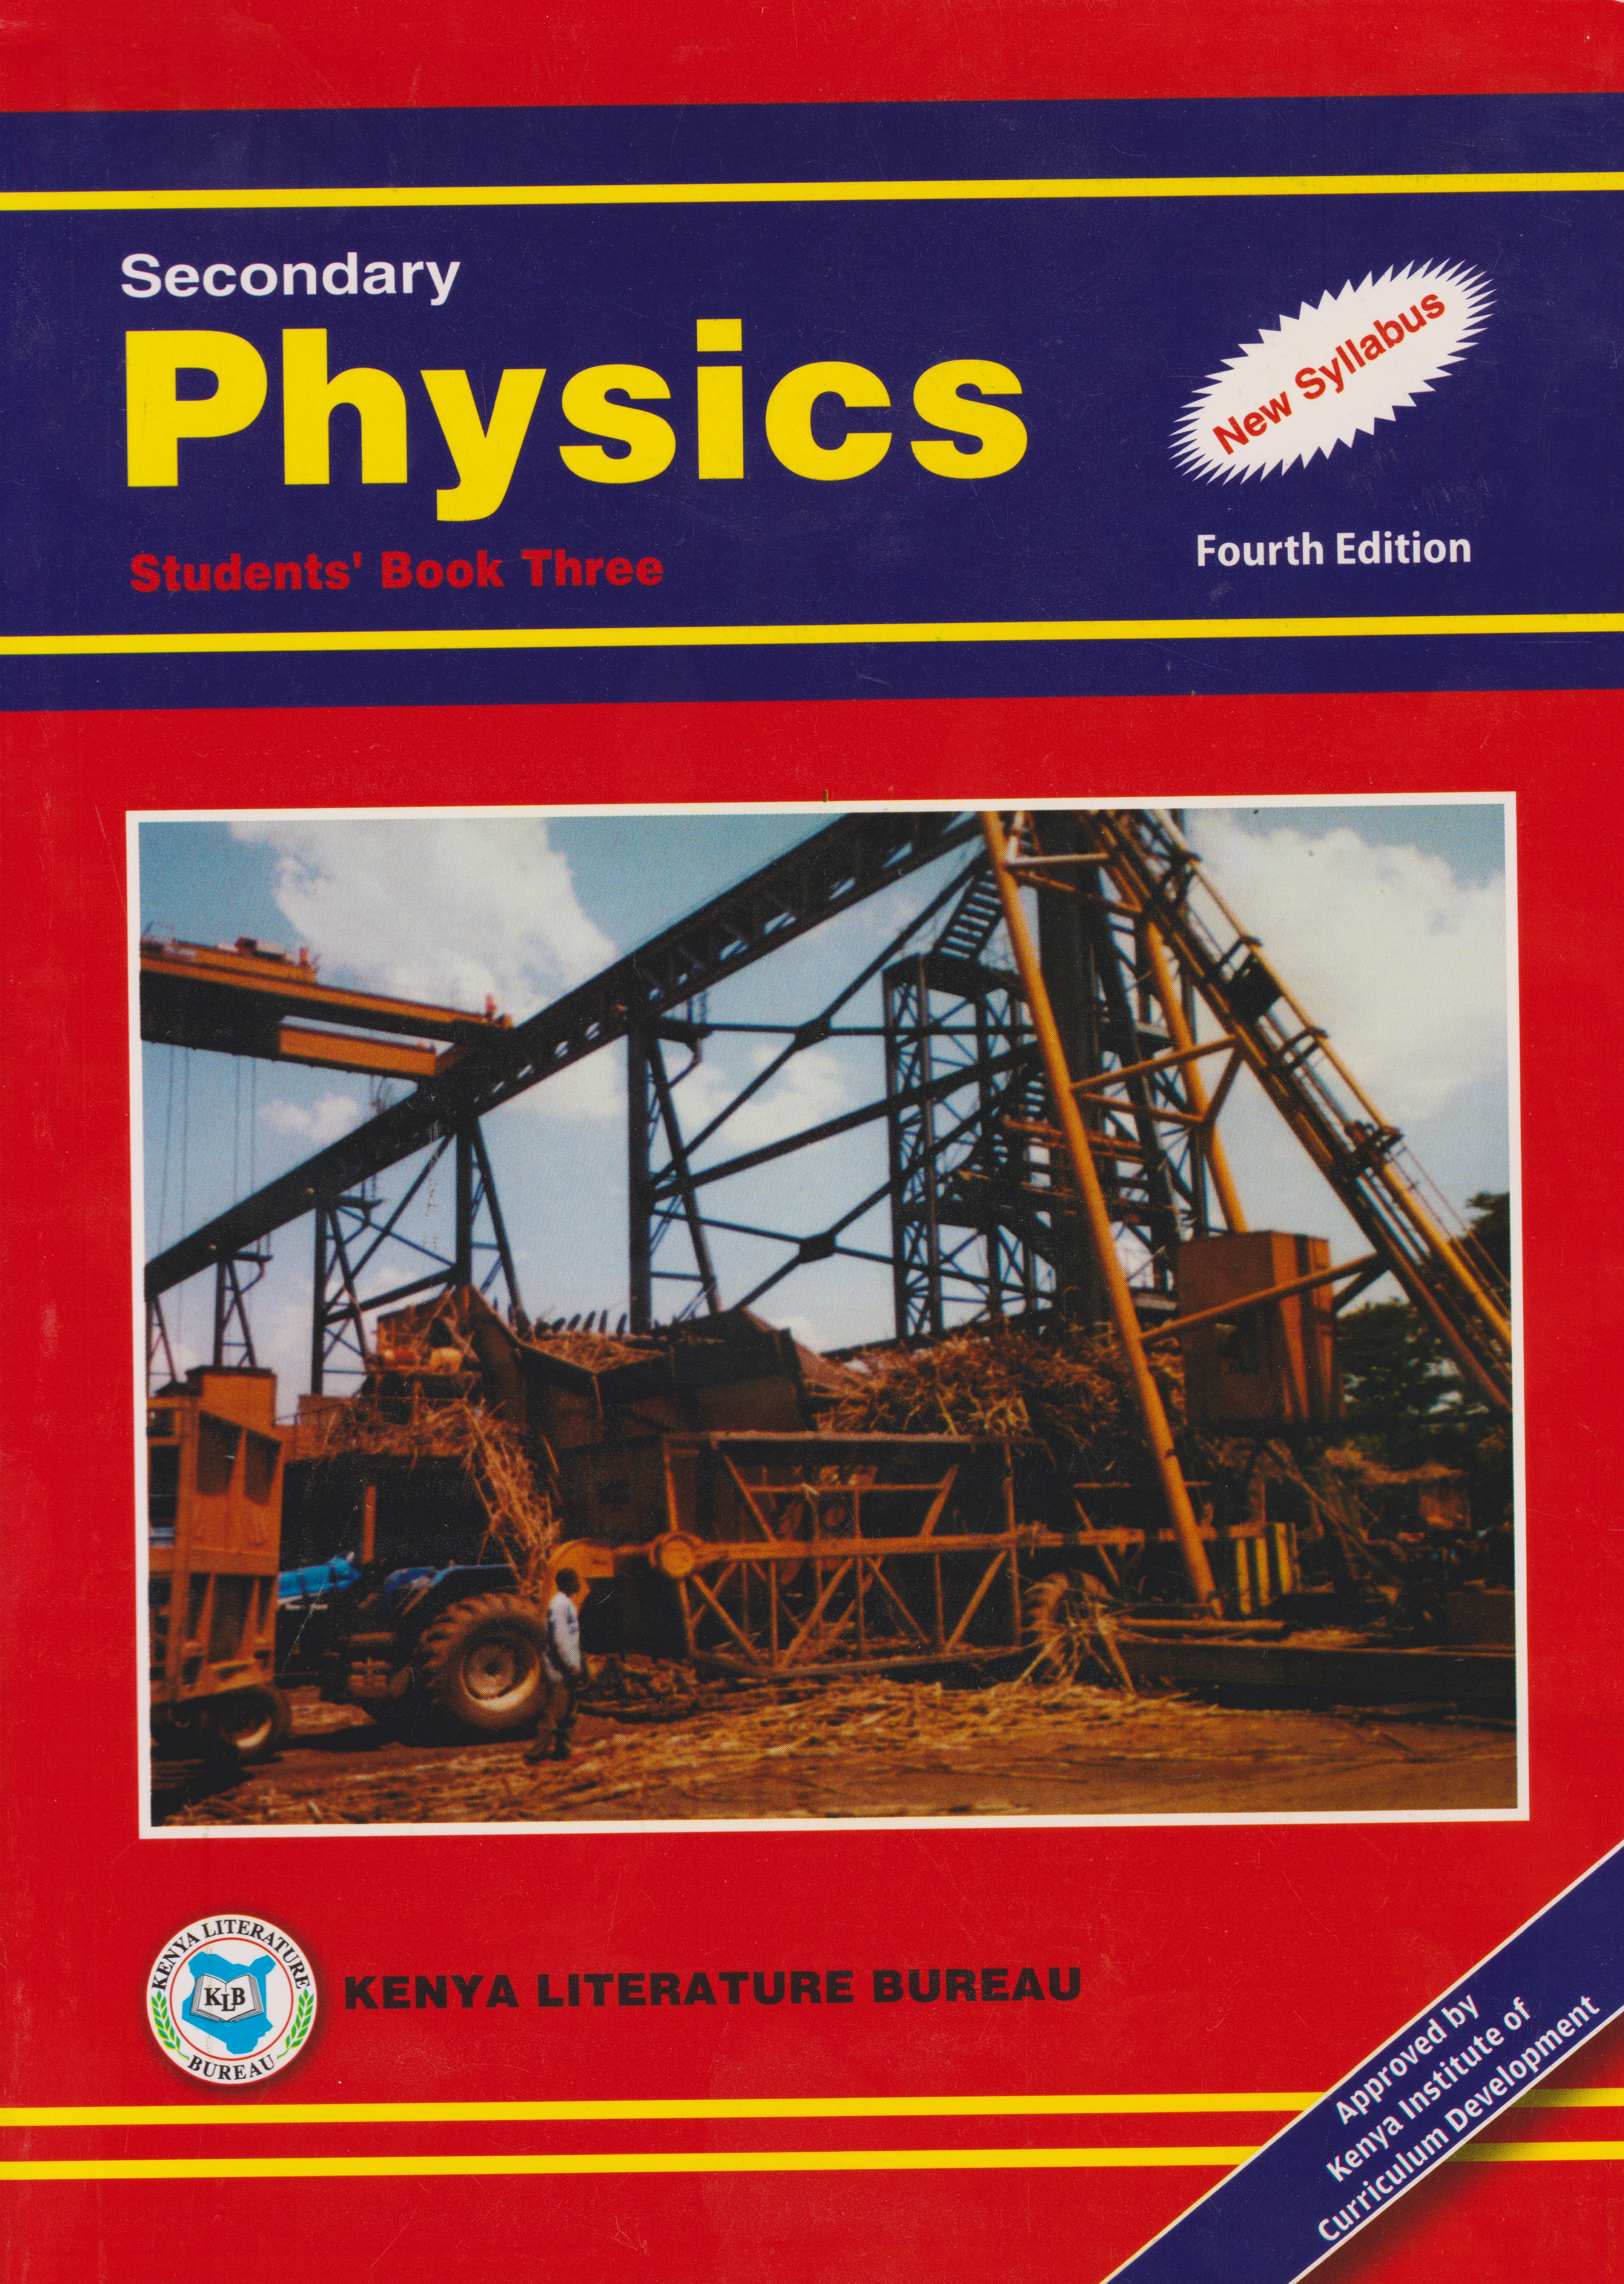 Physics textbook form 4